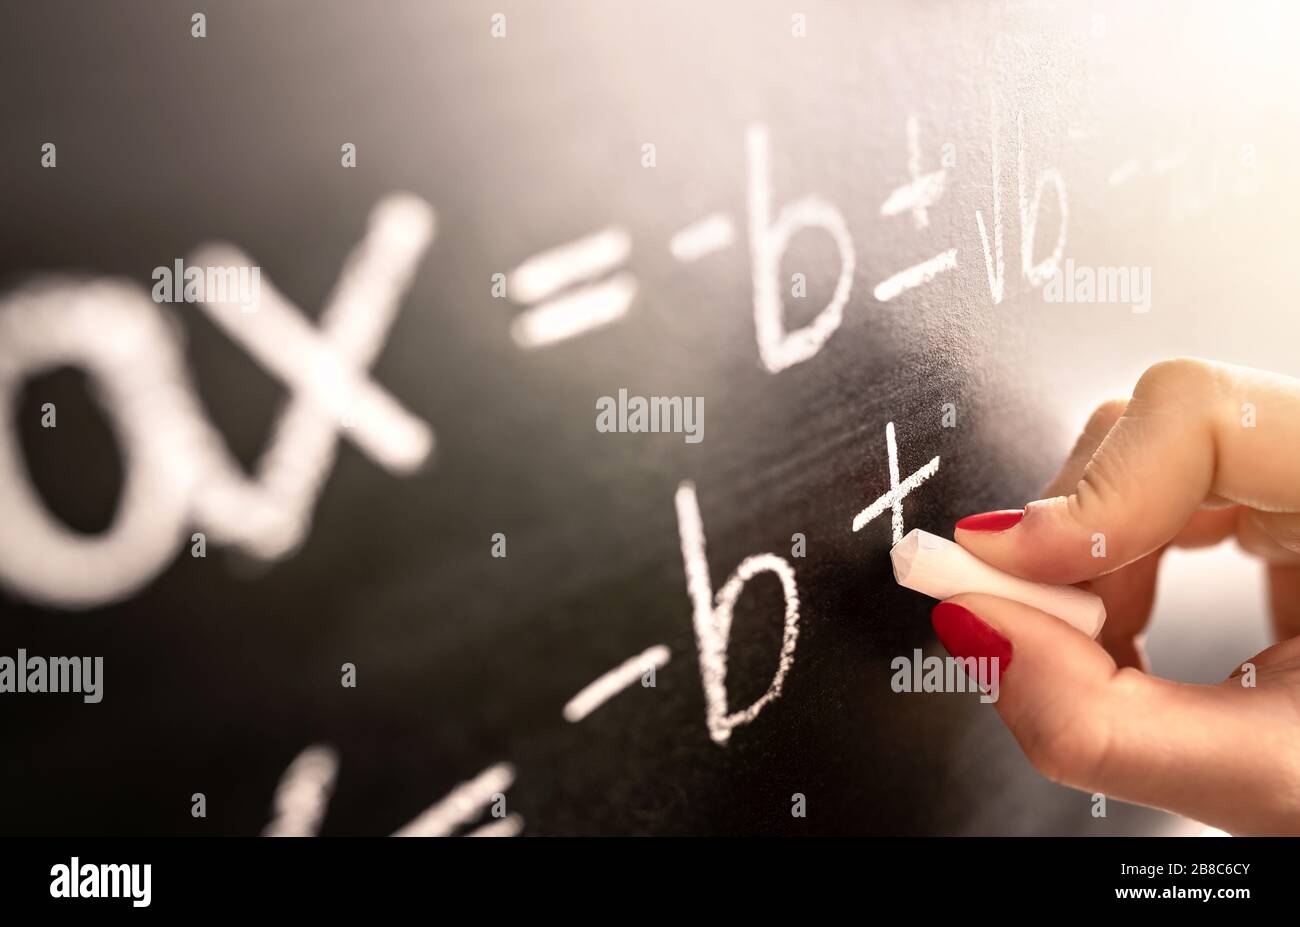 Fonction, équation ou calcul de l'écriture de l'enseignant en mathématiques à bord noir dans la classe scolaire. Étudiant en calcul sur tableau de surveillance. Banque D'Images